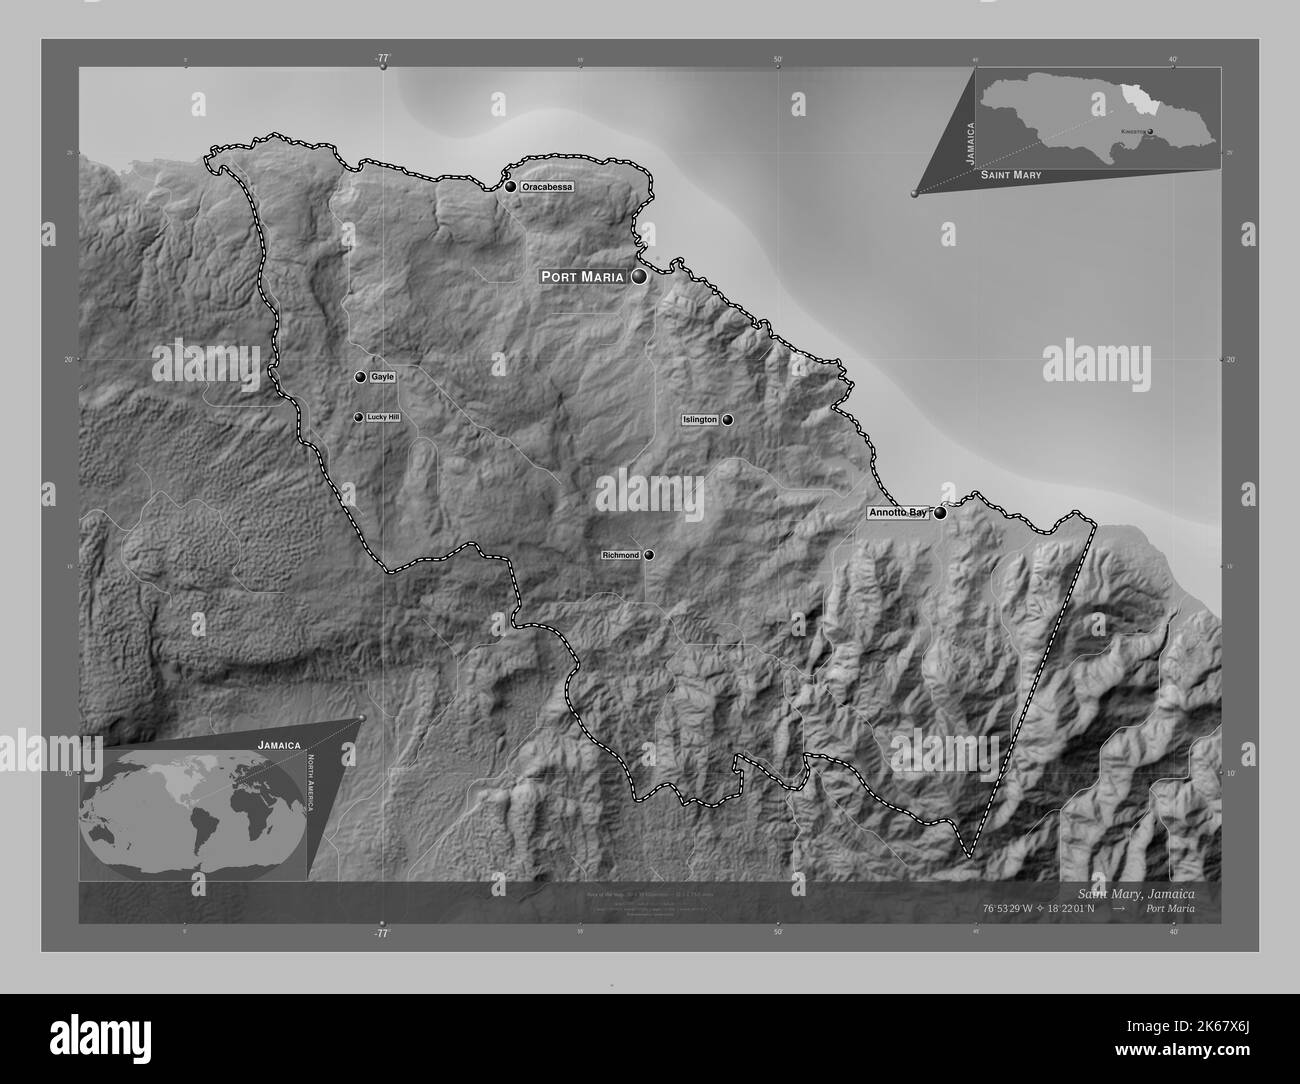 Sainte Marie, paroisse de la Jamaïque. Carte d'altitude en niveaux de gris avec lacs et rivières. Lieux et noms des principales villes de la région. Emplacement auxiliaire du coin Banque D'Images